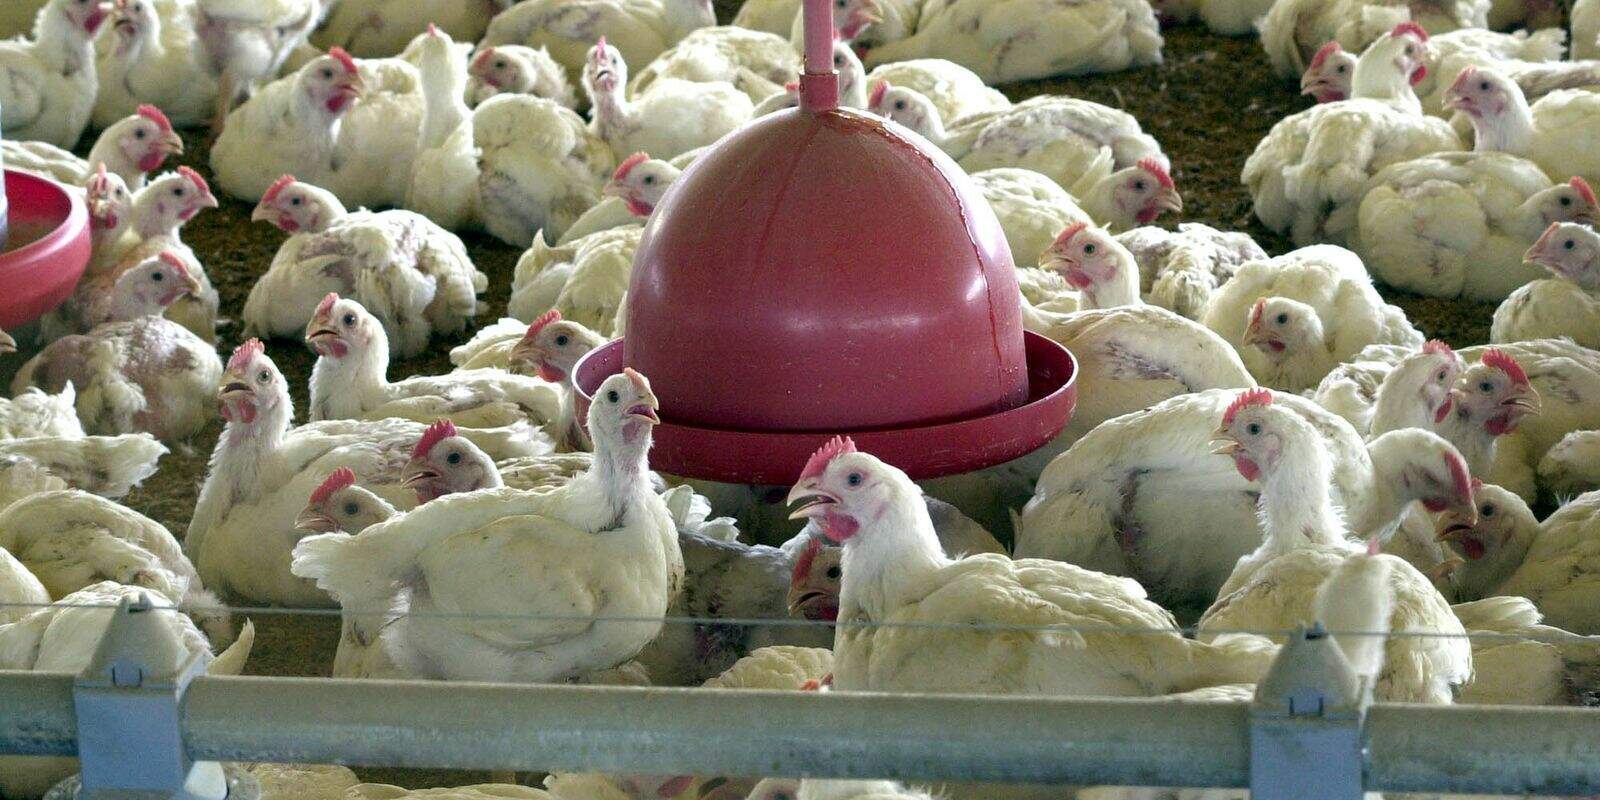 Ministério da Saúde descarta suspeita de gripe aviária em humano no ES